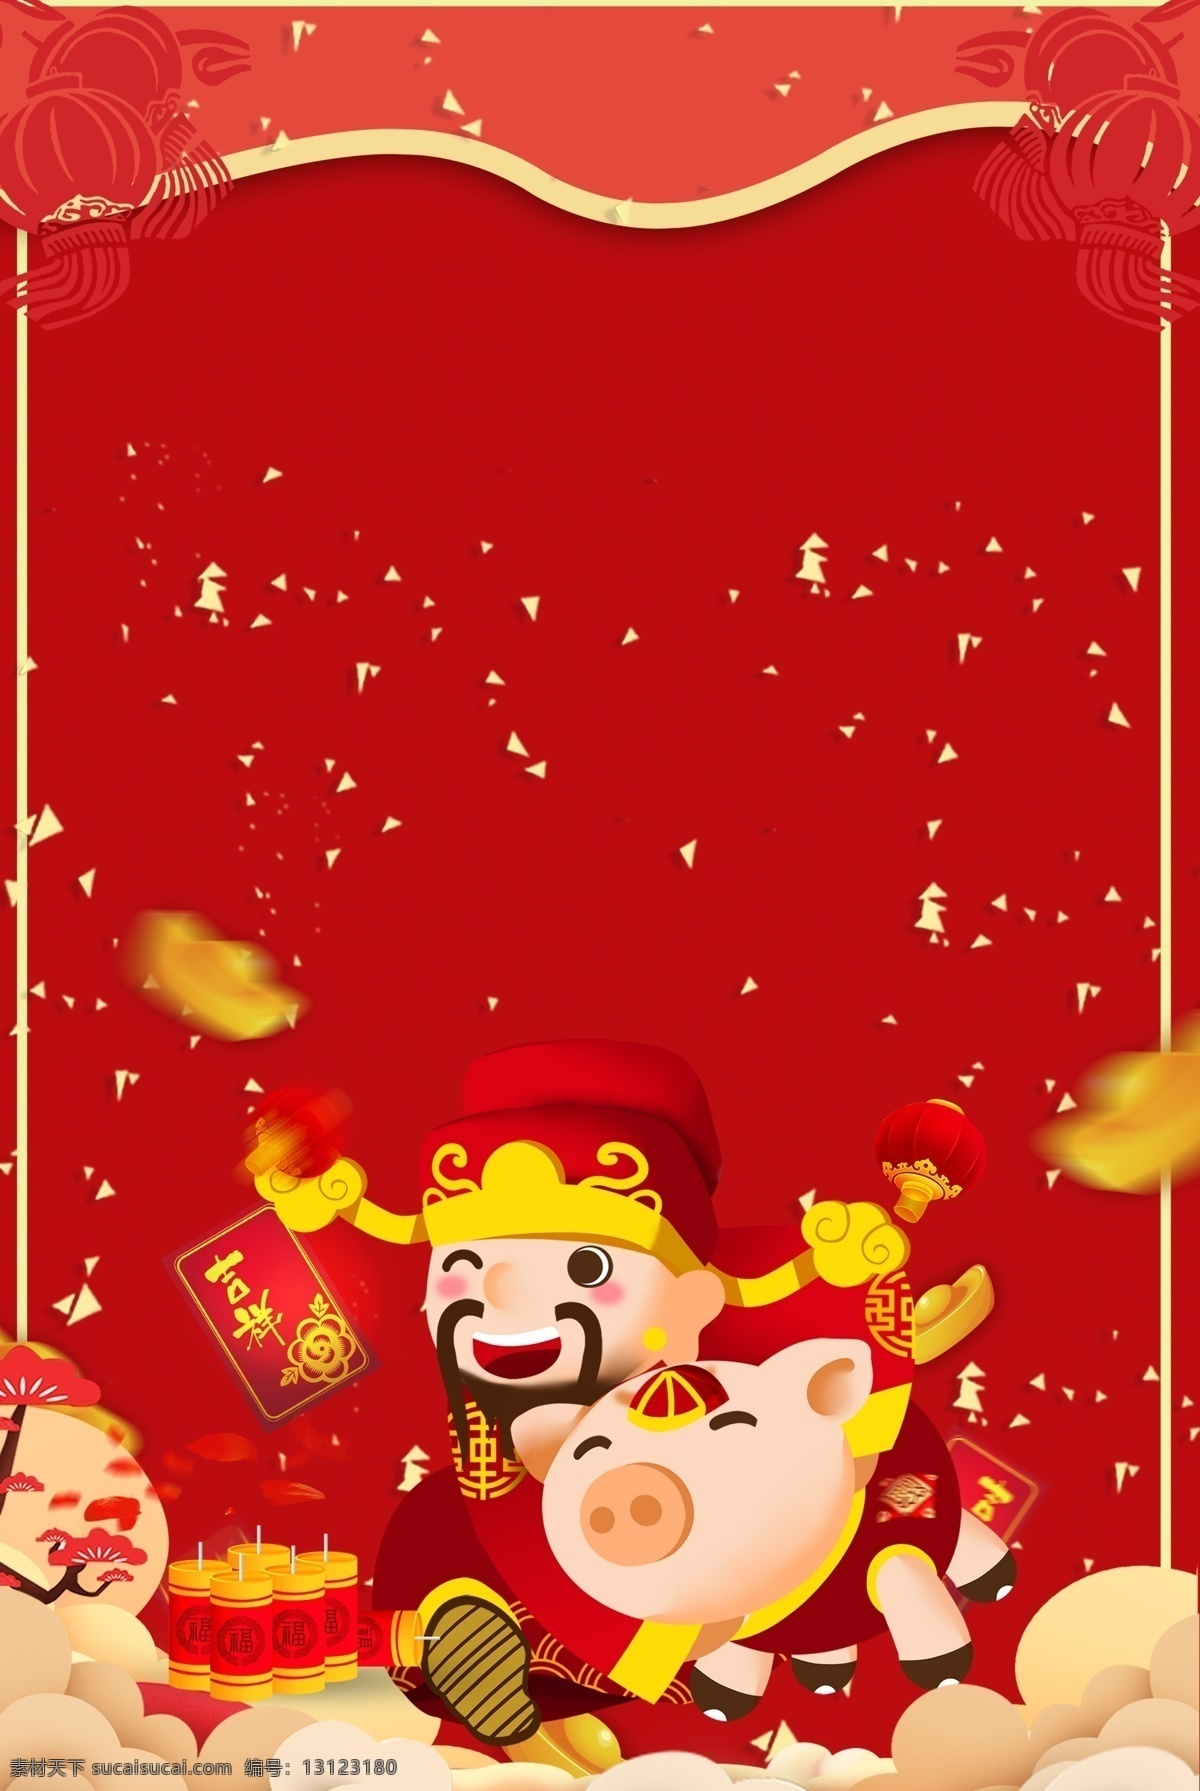 2019 新年 元旦 红色 海报 背景 春节 猪年 卡通 元宝 烟花 灯笼 猪年素材 新年海报 跨年 财神